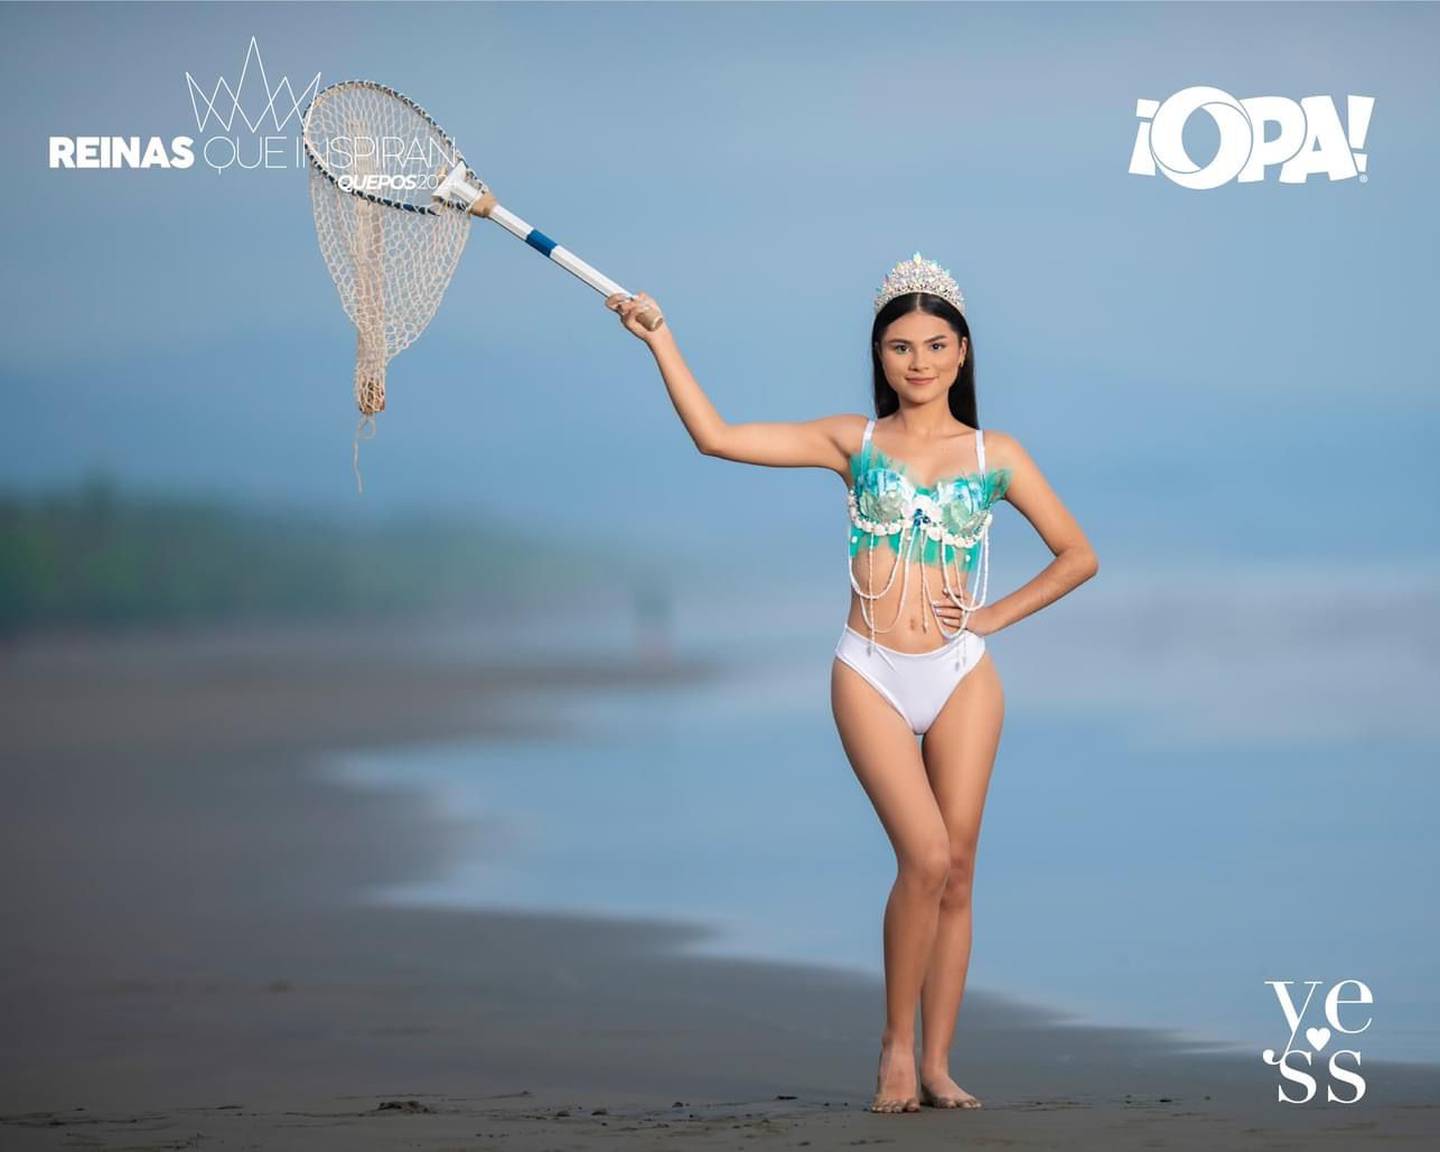 Concurso Reinas que inspiran de Quepos será transmitido por canal ¡Opa!